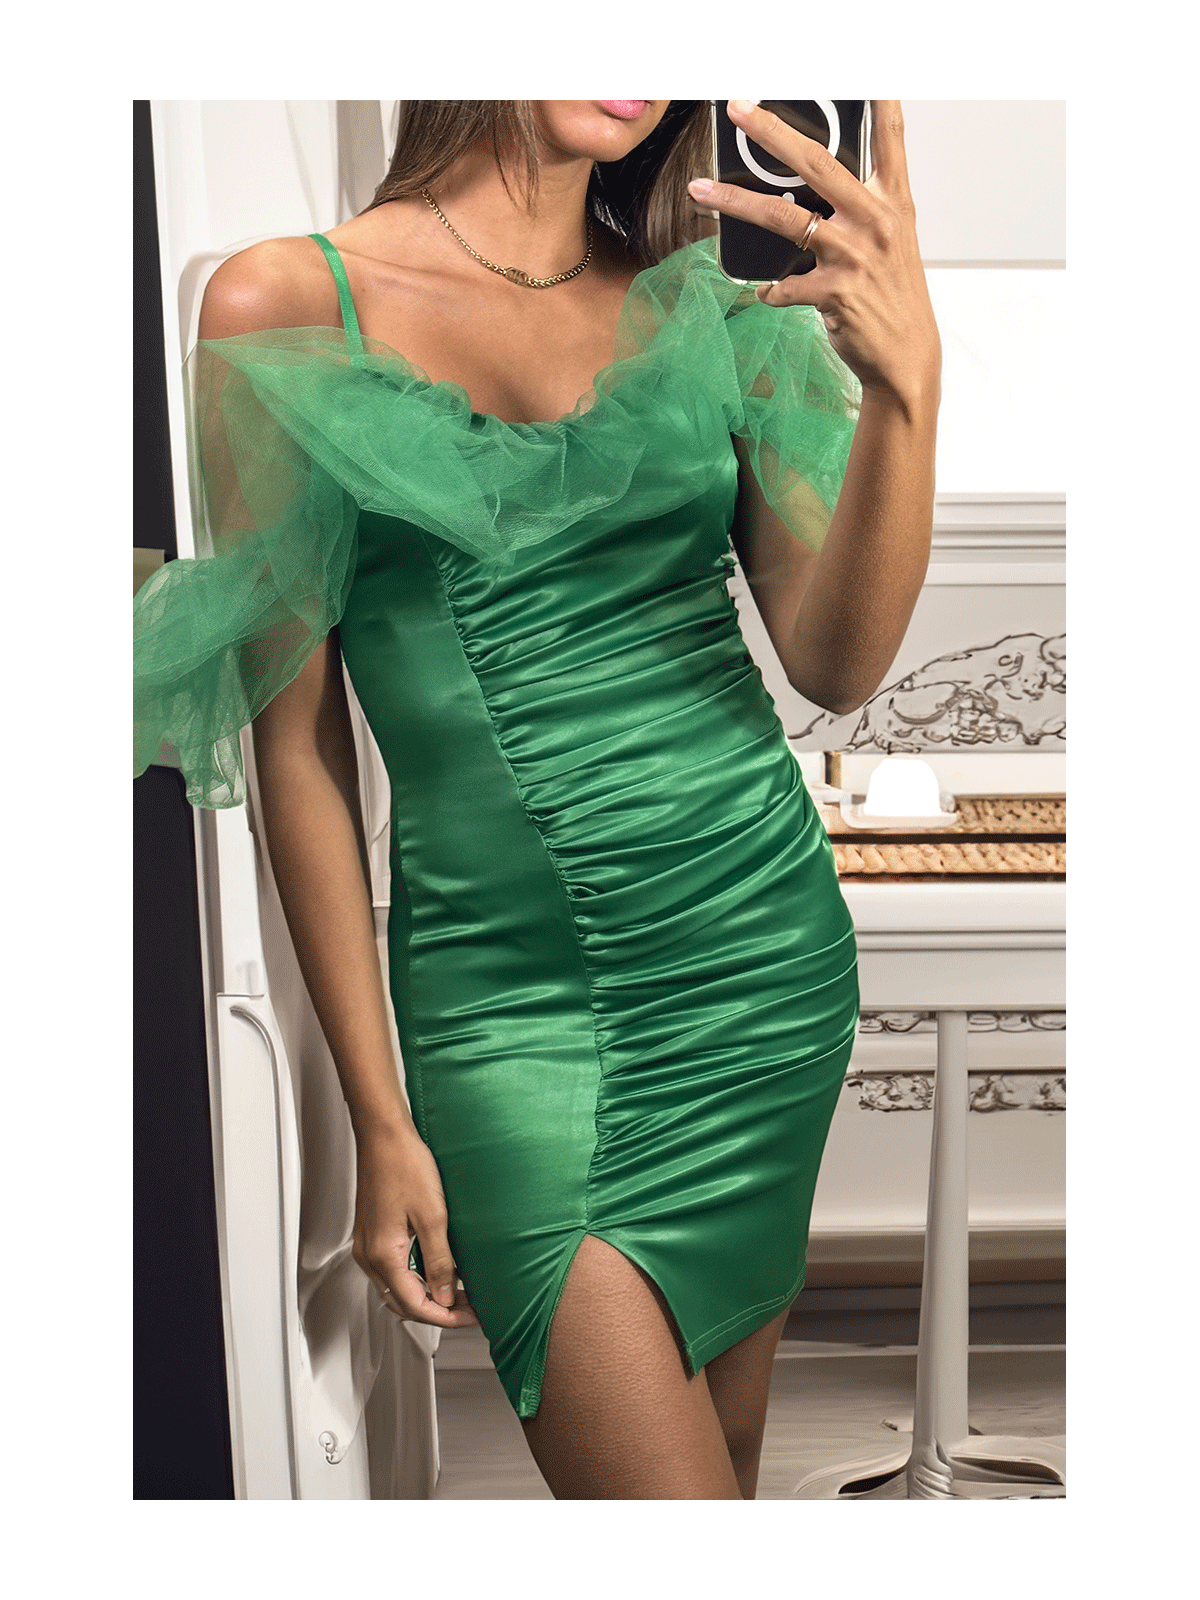 Sublime robe satiné verte avec tulle tombant aux épaules - 4